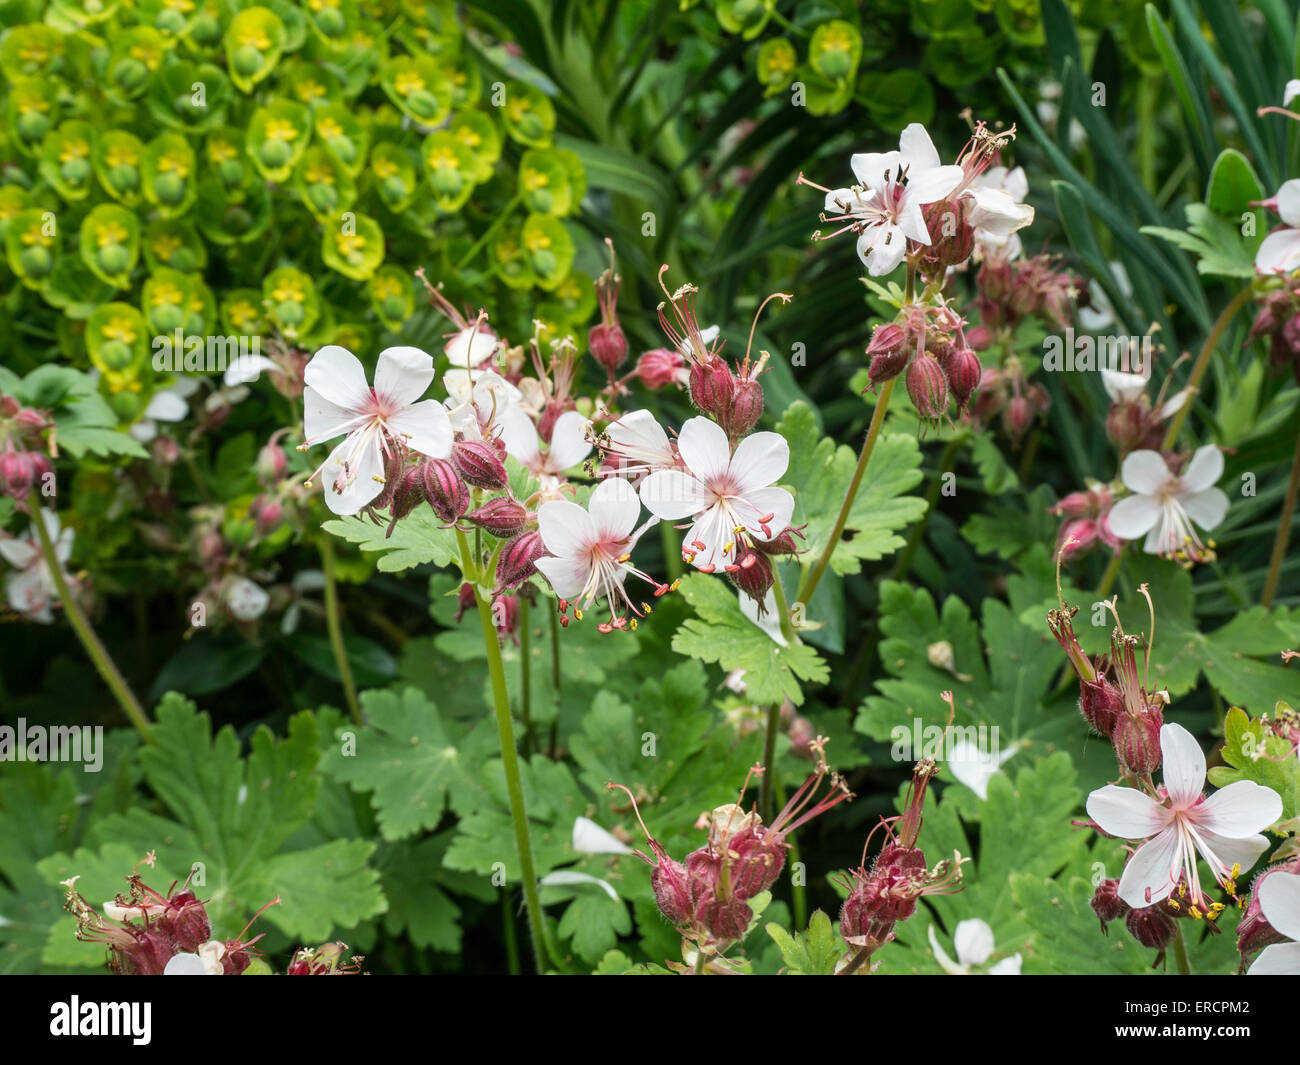 Geranium macrorrhizum ' Album' flowers Stock Photo